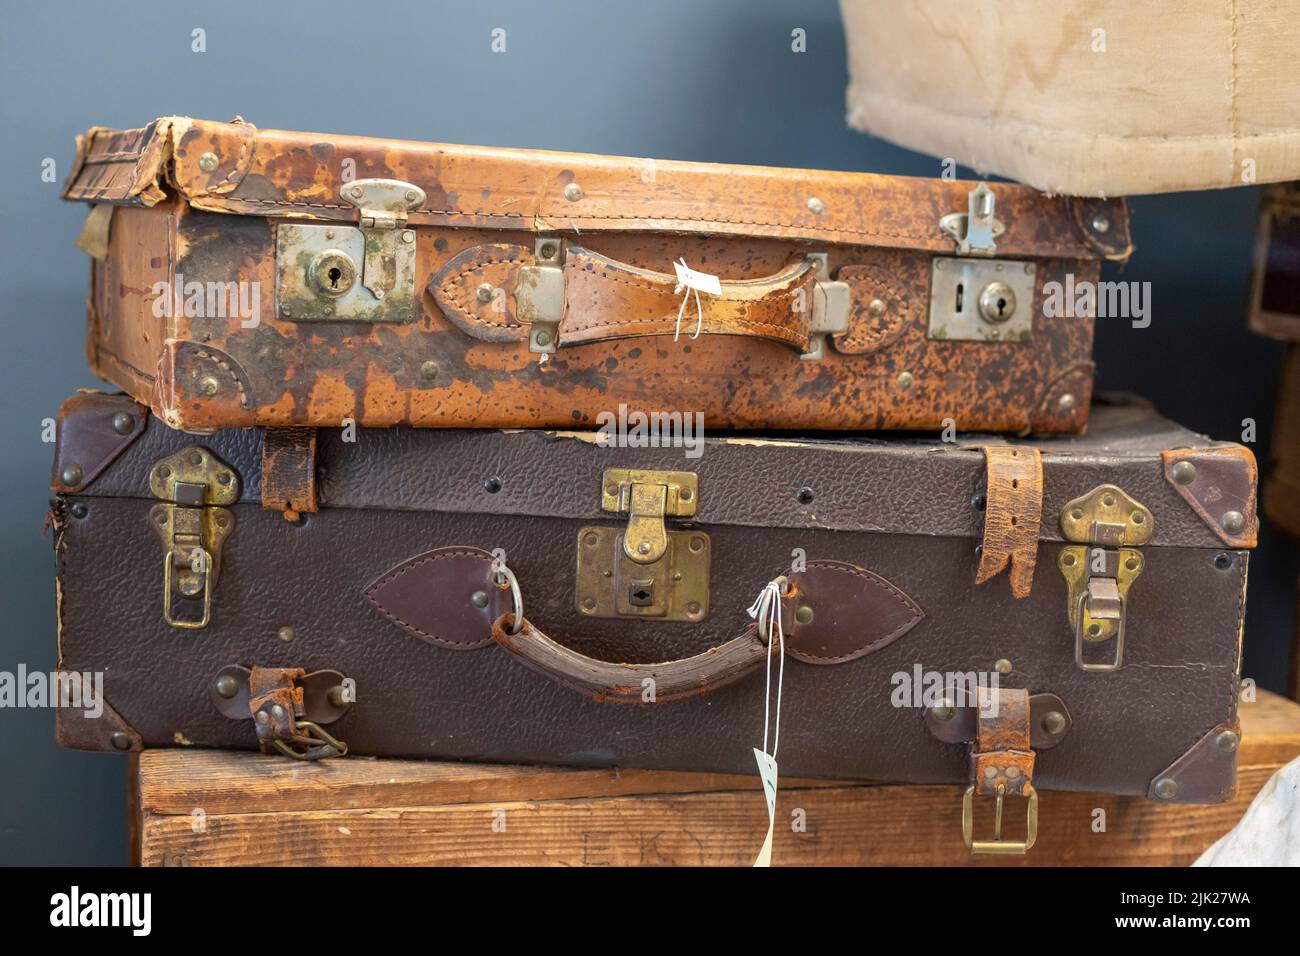 Granada, Colorado - das Amaché Museum in der Nähe des Weltkrieges 2 das japanische Internierungslager Amache zeigt Koffer, die Internierte mitgebracht haben, als sie ev Stockfoto